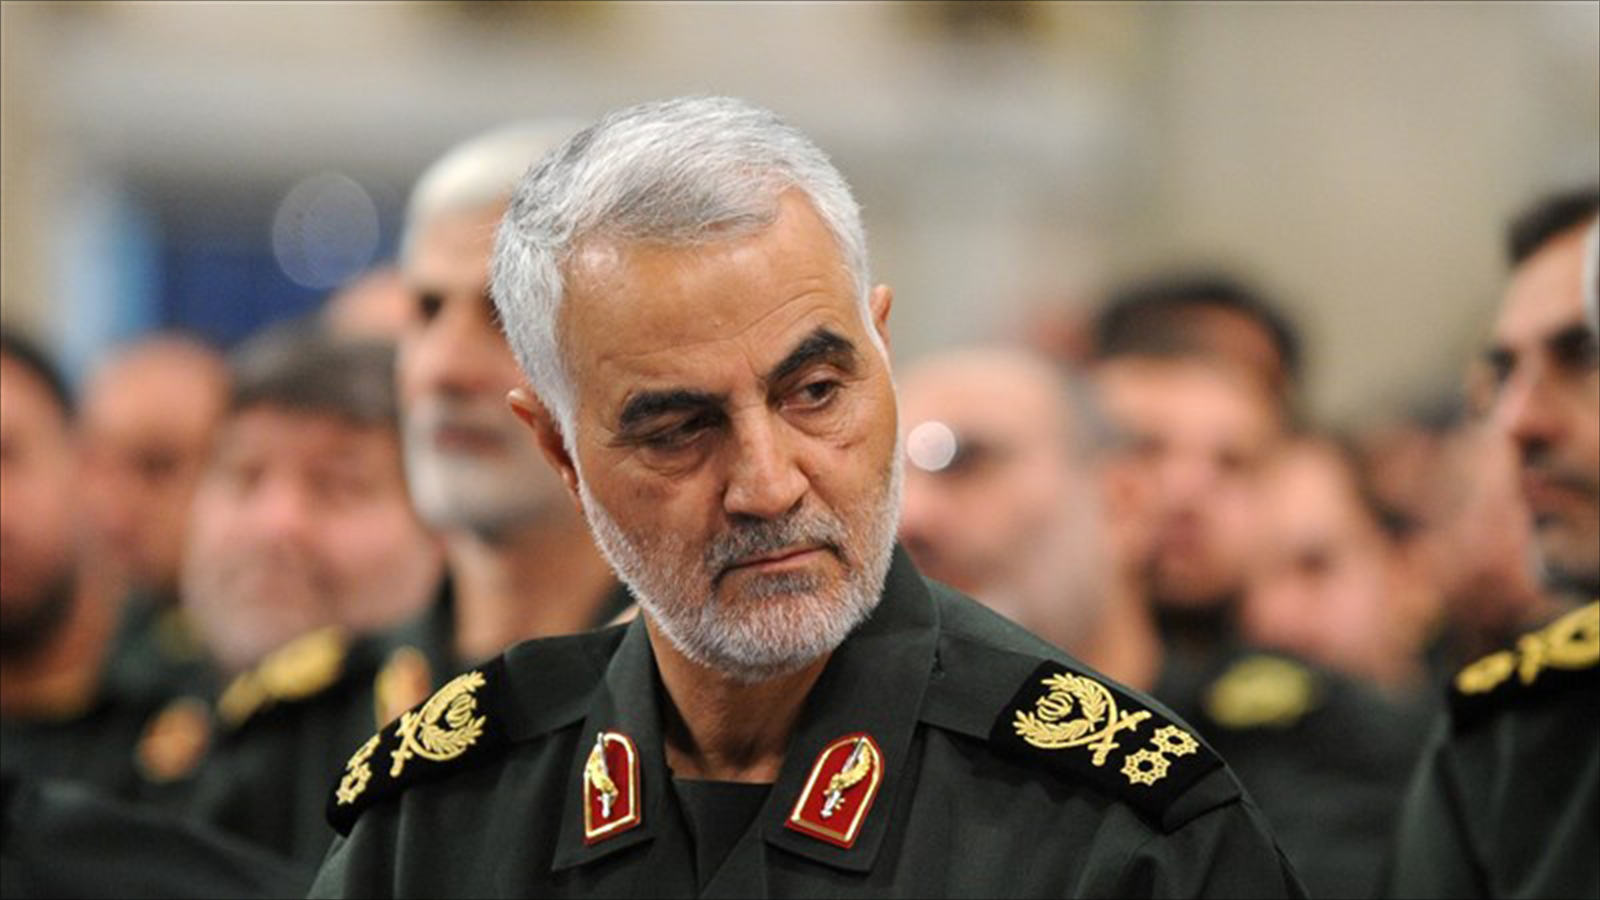 دور سياسي ينتظر الجنرال سليماني يخرجه من دائرة الجنرال الظل (الصحافة الإيرانية)